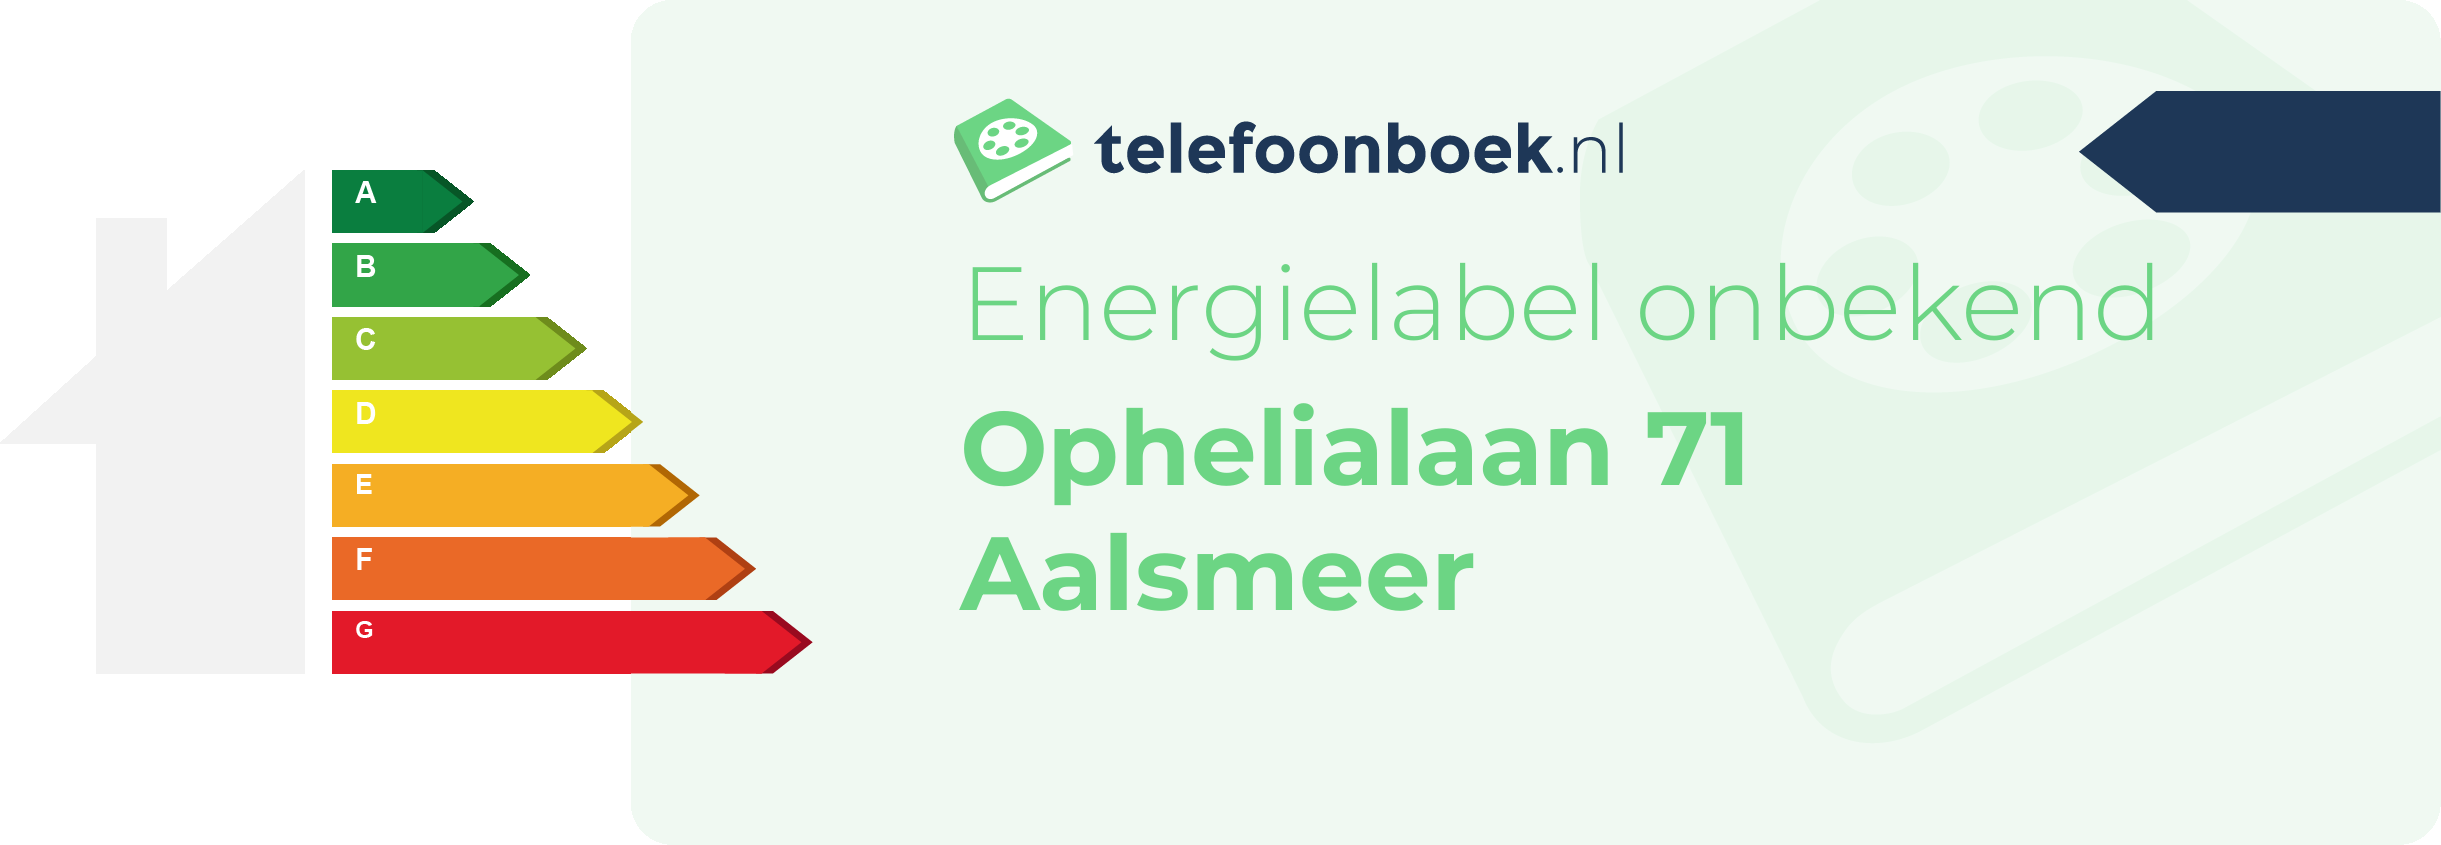 Energielabel Ophelialaan 71 Aalsmeer